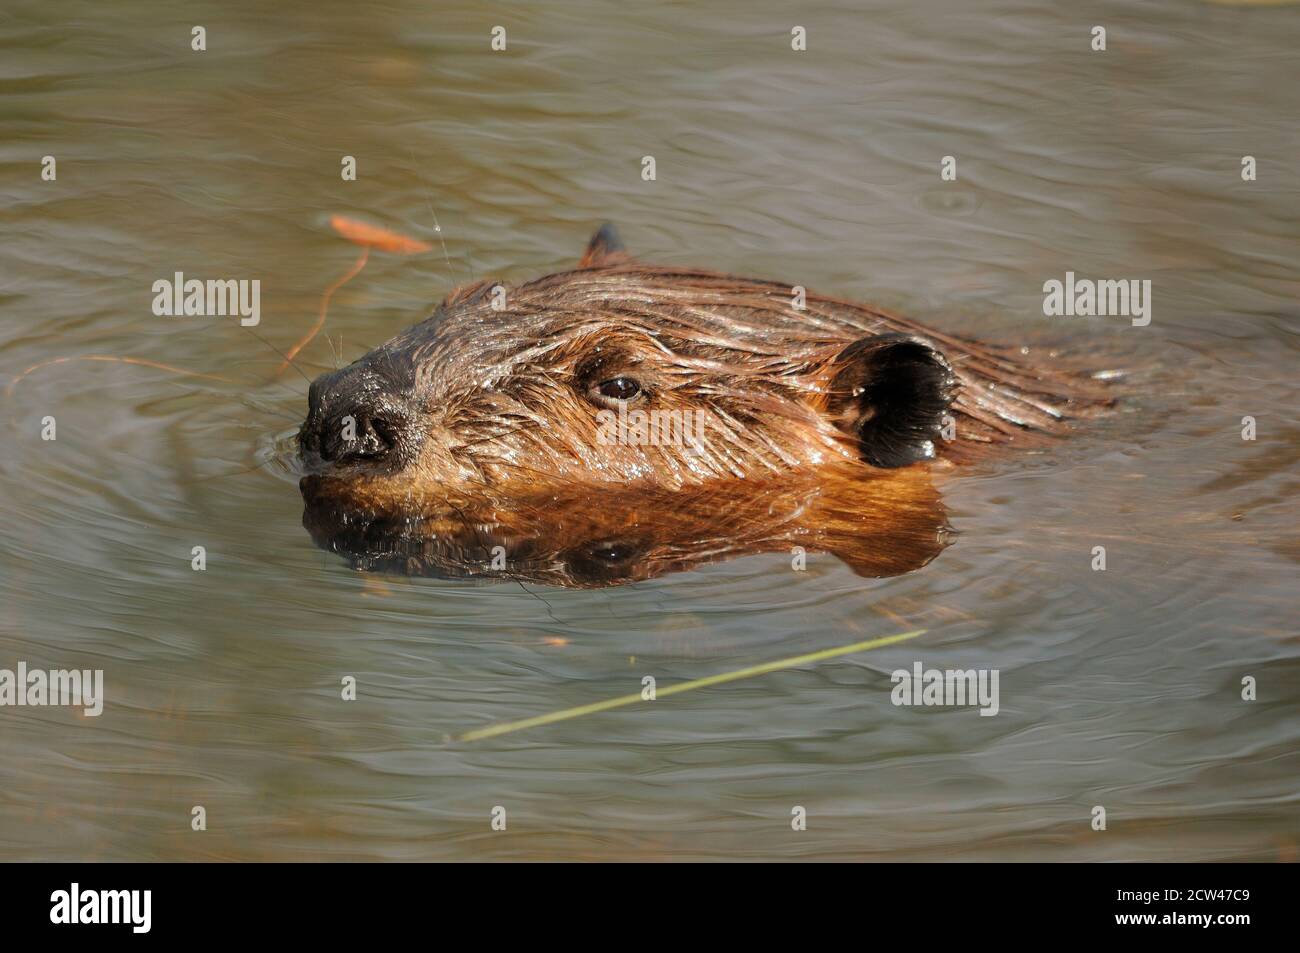 Profil de la tête de castor dans l'eau présentant sa fourrure brune, sa tête, ses yeux, ses oreilles, son nez, avec un fond d'eau dans son habitat et son environnement. Banque D'Images